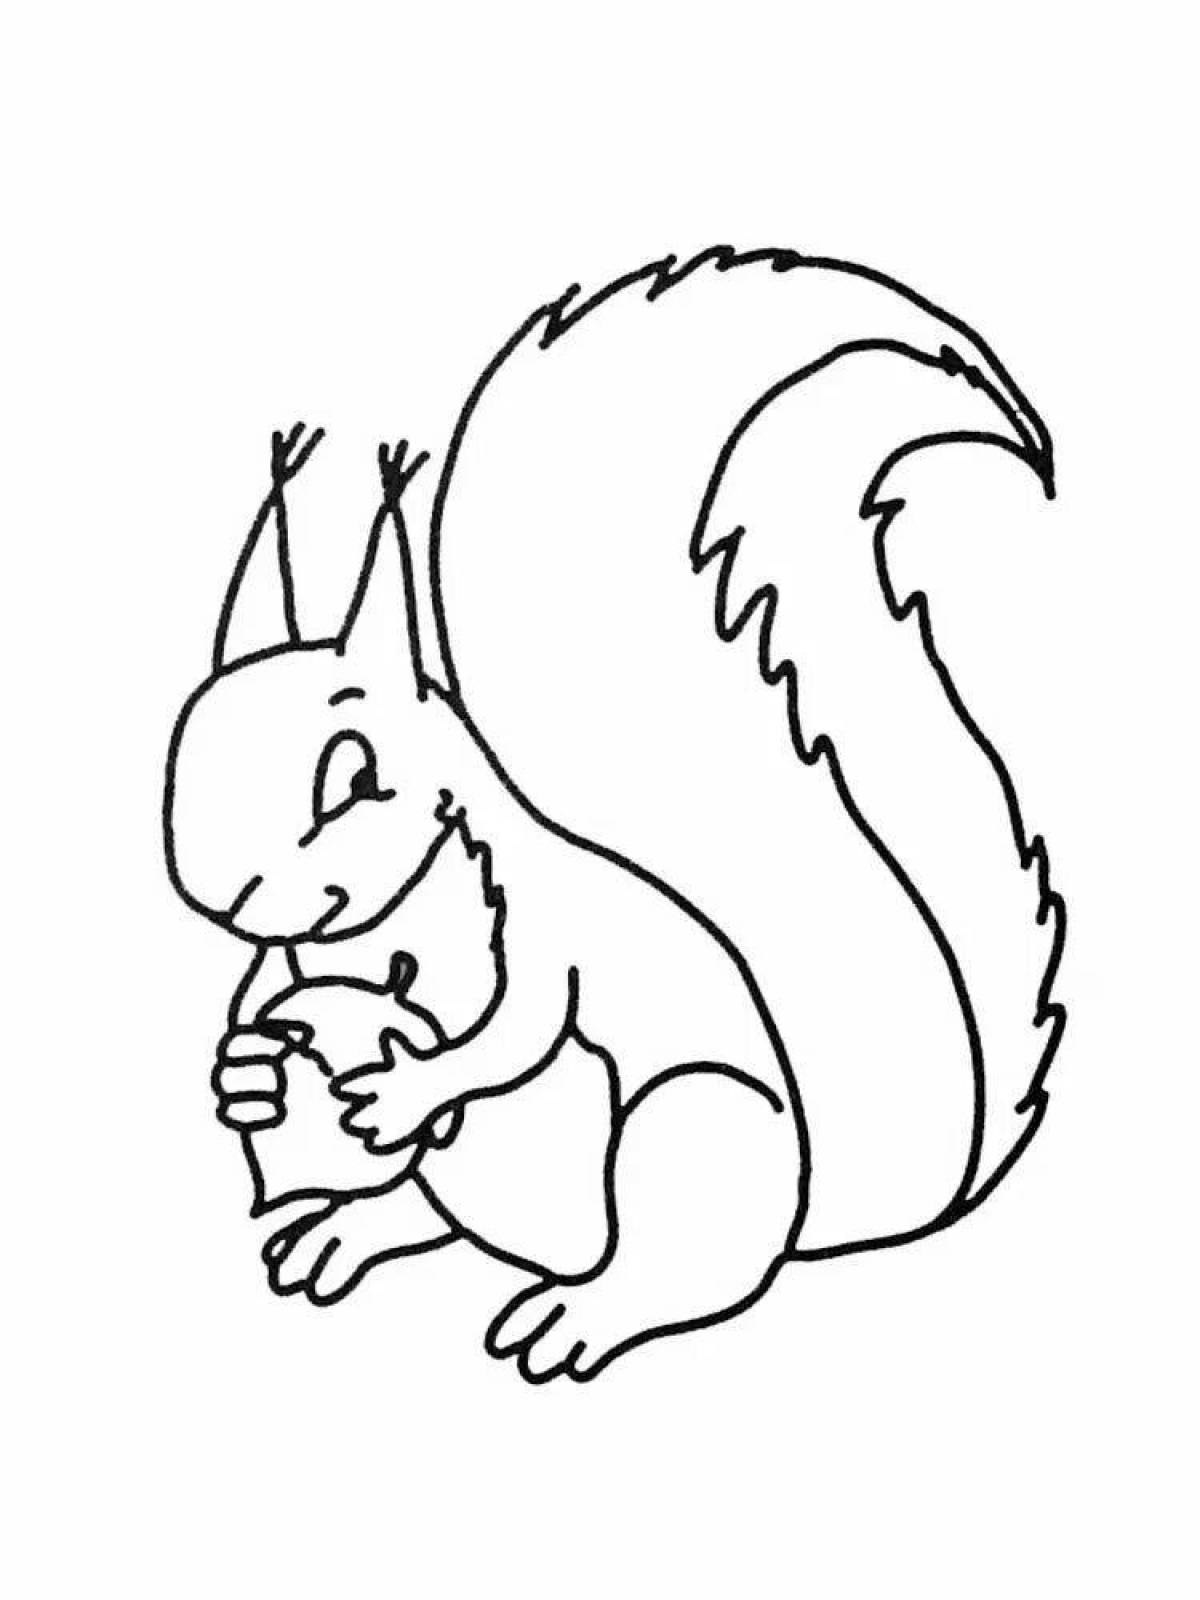 Fun squirrel coloring book